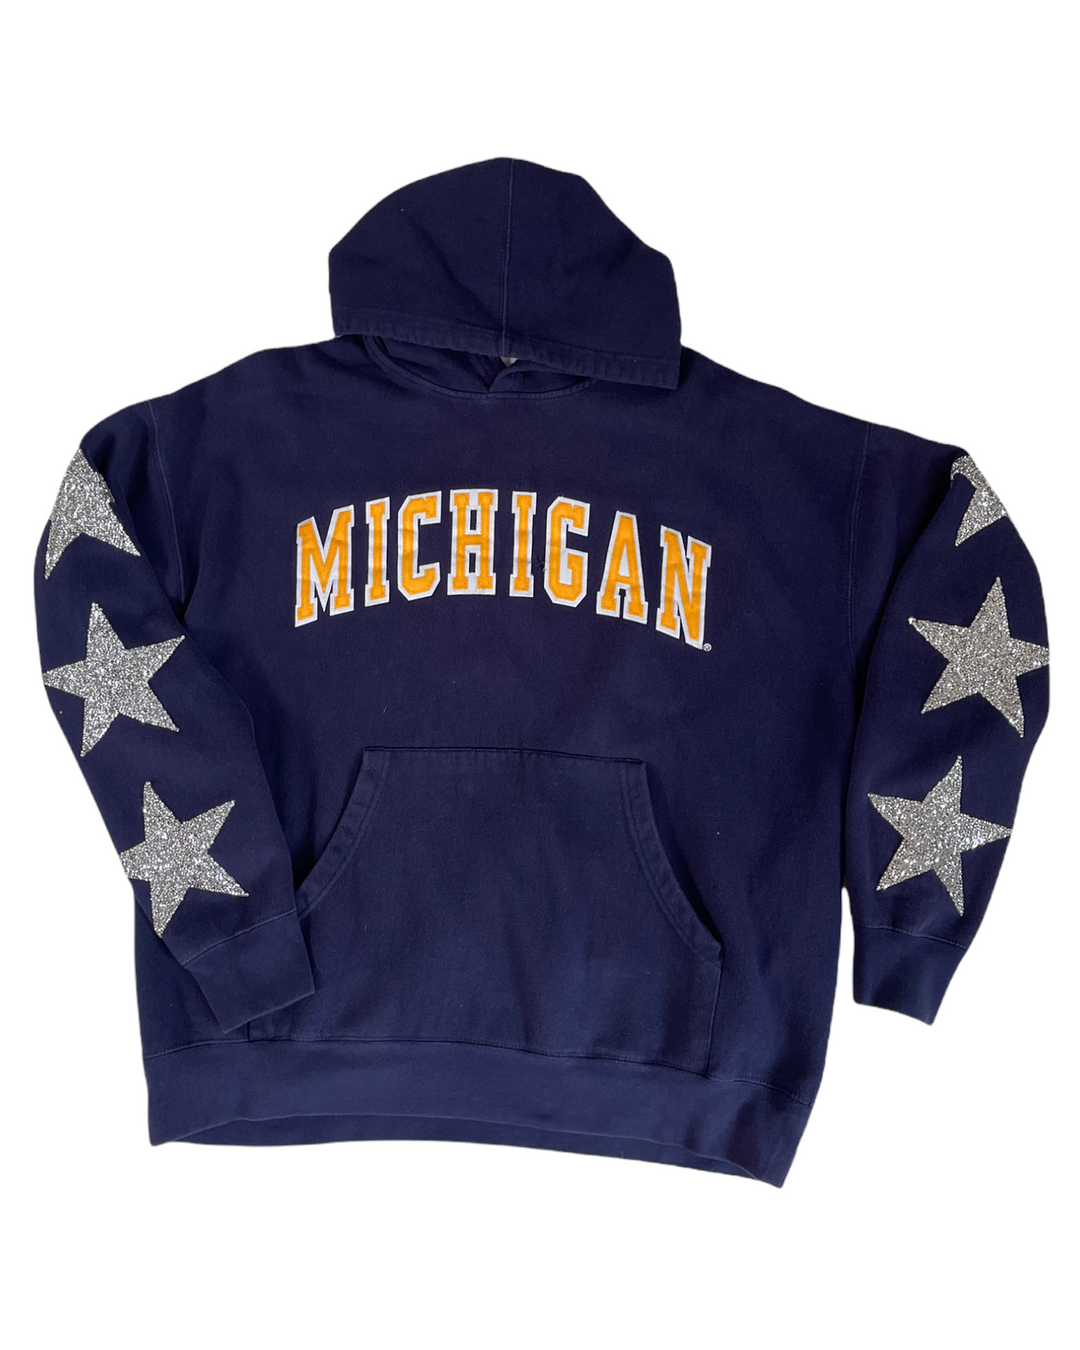 Michigan Vintage Star Patch Sweatshirt